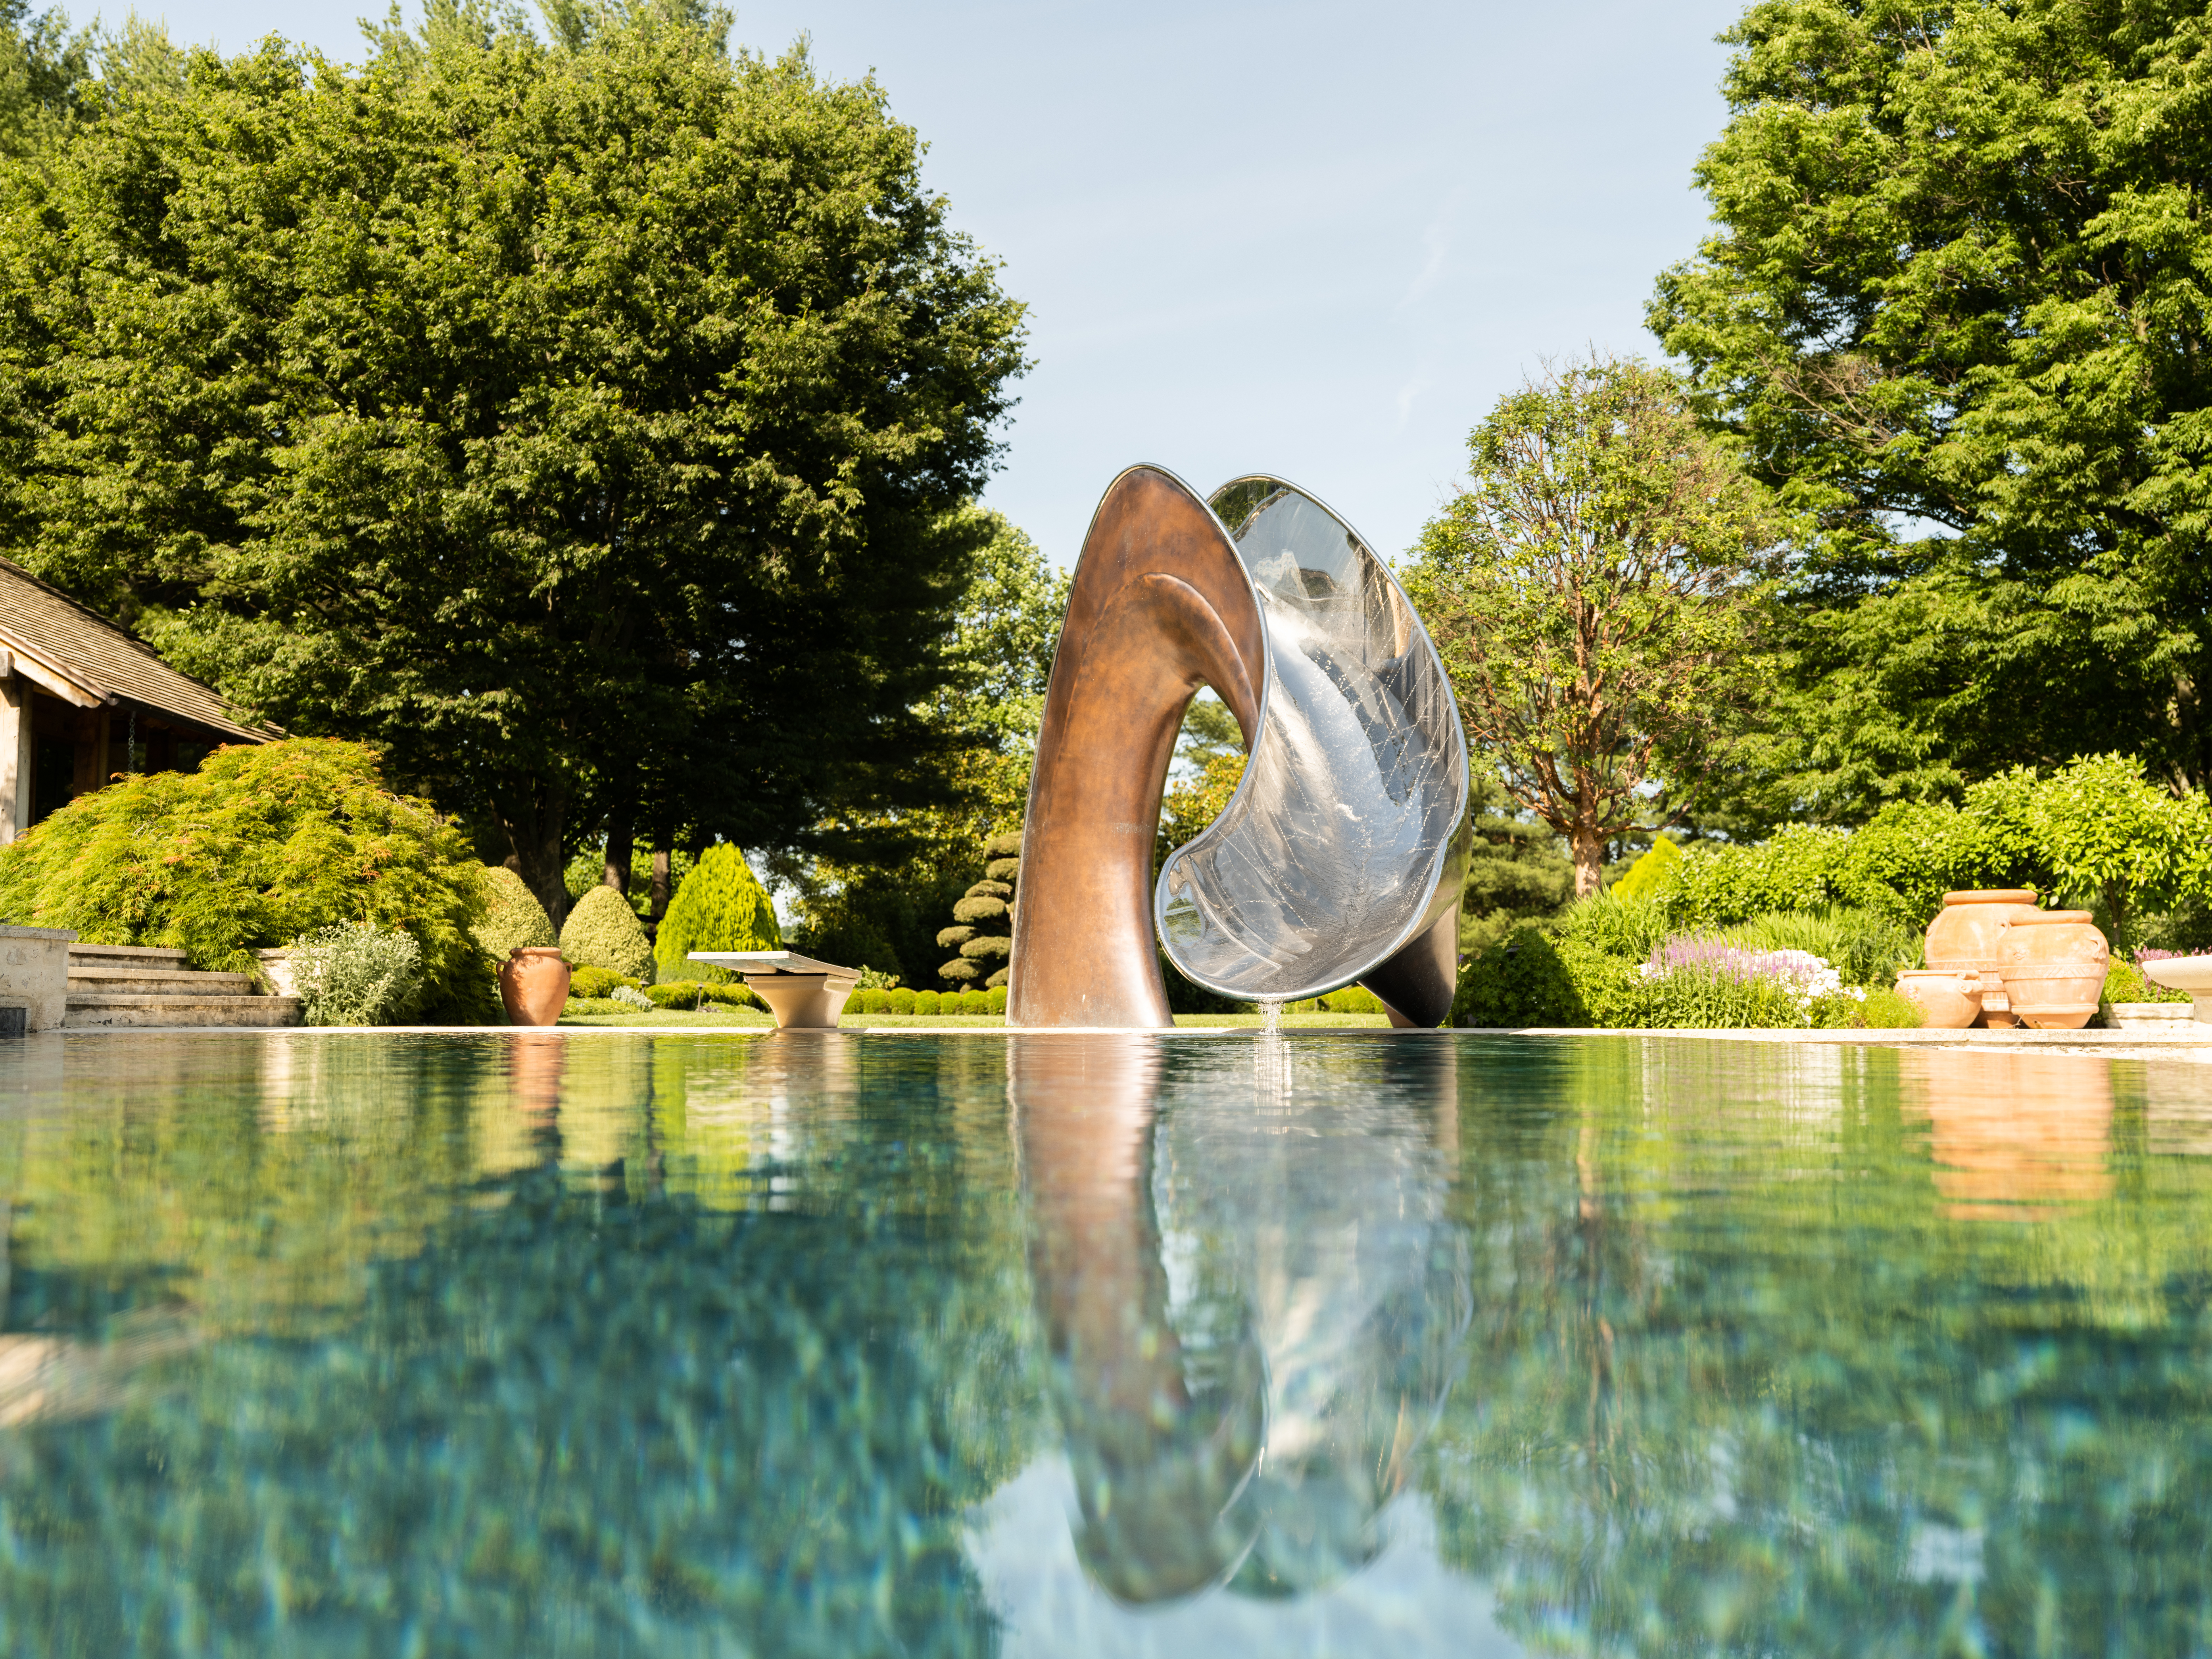 Vertex slide in bronze by Splinterworks by a blue swimming pool